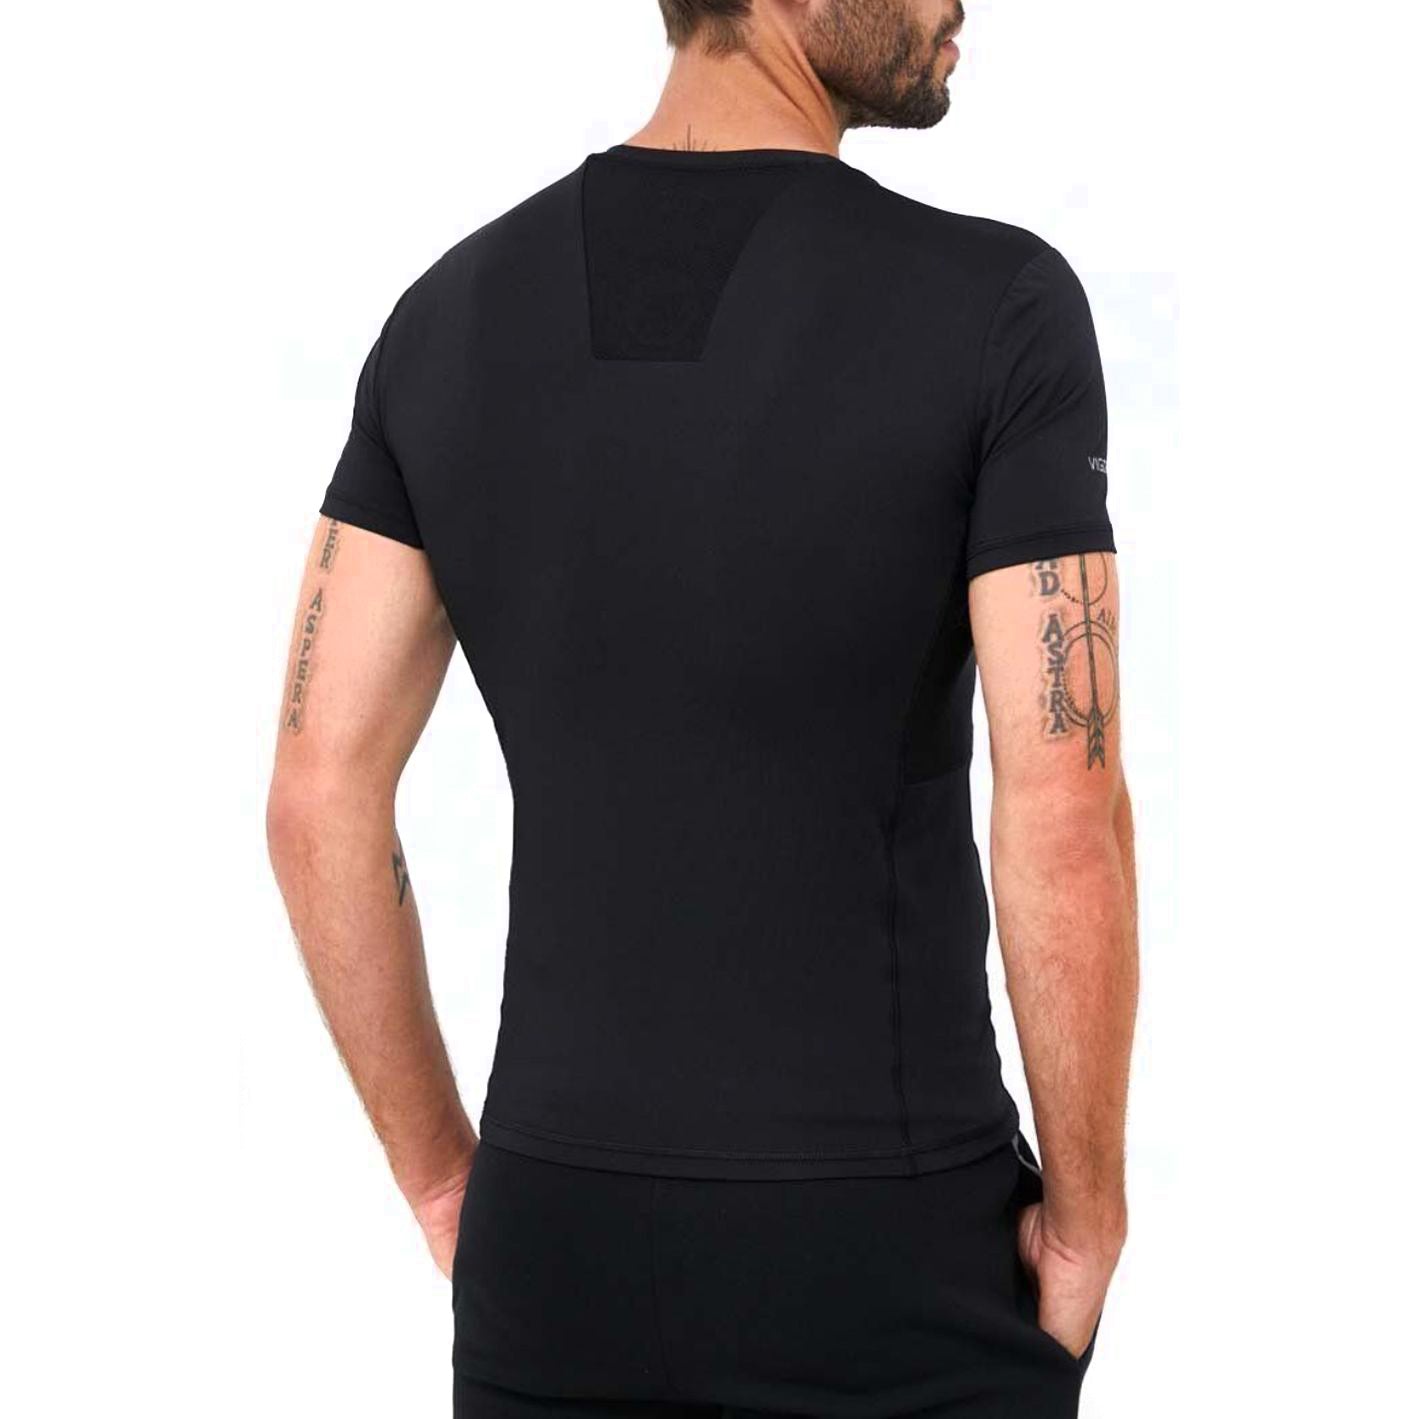 EA7 vyriški juodi marškinėliai trumpomis rankovėmis T-shirt